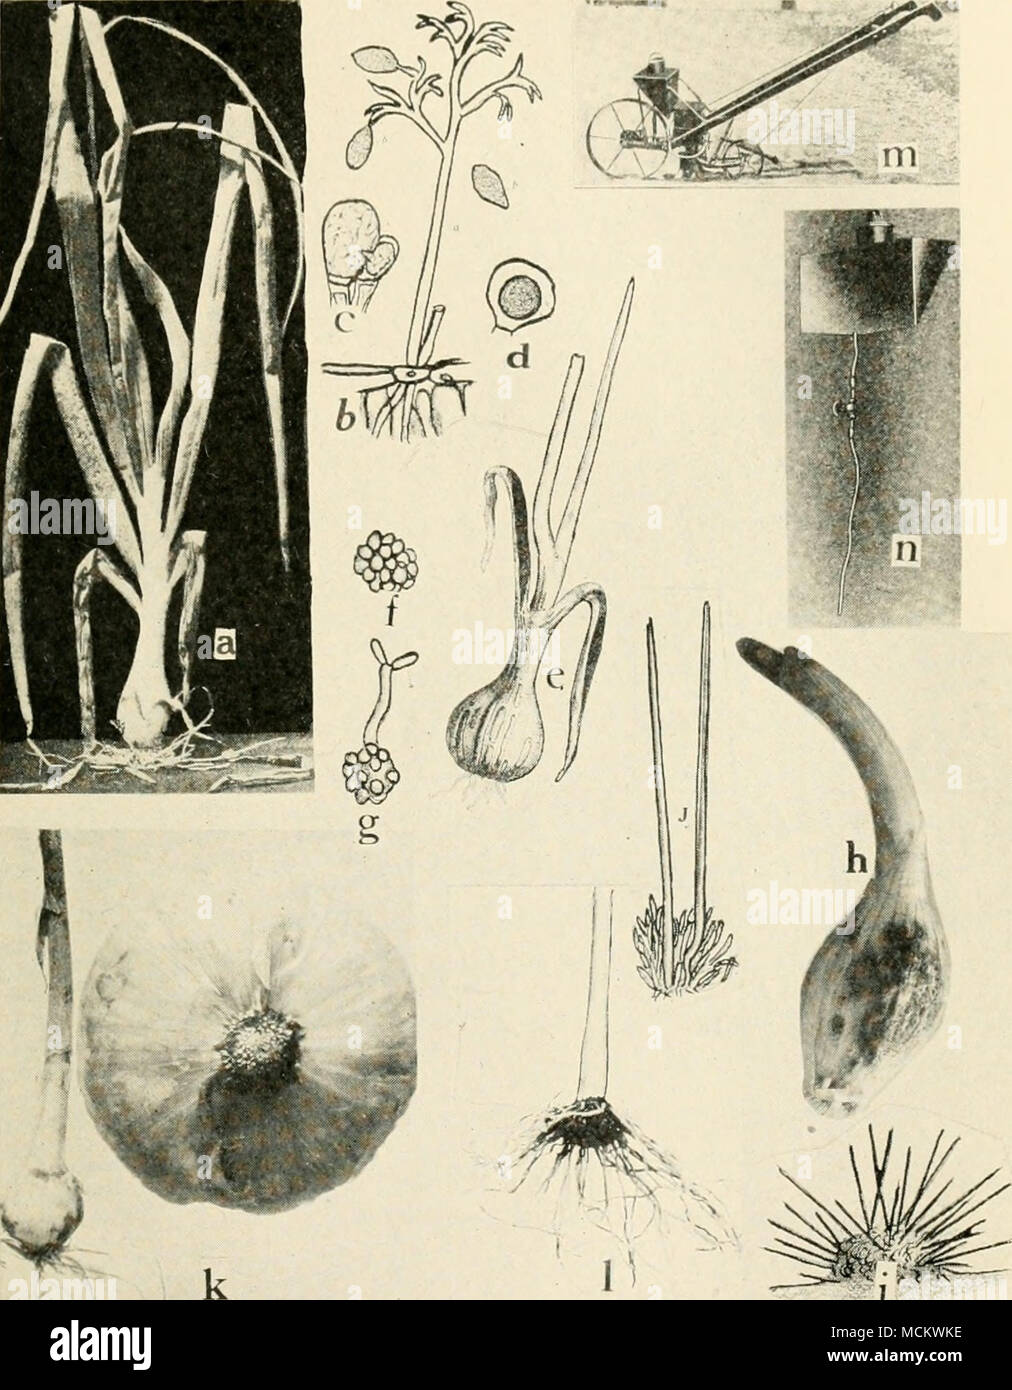 . , N ^i "; Fig. 54. Onion malattie. a. Peronospora, b. maturo conidiophore e conidi di Peronospora schleideni, c. fecondazione della femmina oogonium dal maschio antheridium, d. oospore (a. d. Dopo Wh^tzel), e. ONION granello di fuliggine, /. sfera di spore del granello di fuliggine fungo, g. spora germina- tion, formazione di sporidia a x, h. Antracnosi Vermicularia, i. sezione attraverso acervulis di Vermicularia cirdnans. j. setae e la formazione di spore in V. circinans {e. g., i e j. Dopo Thaxter), k. rosa radice di cipolla, sani e malati lampadine, I. rosa radice di cipolla che mostra la formazione di nipplo m. un formald Foto Stock